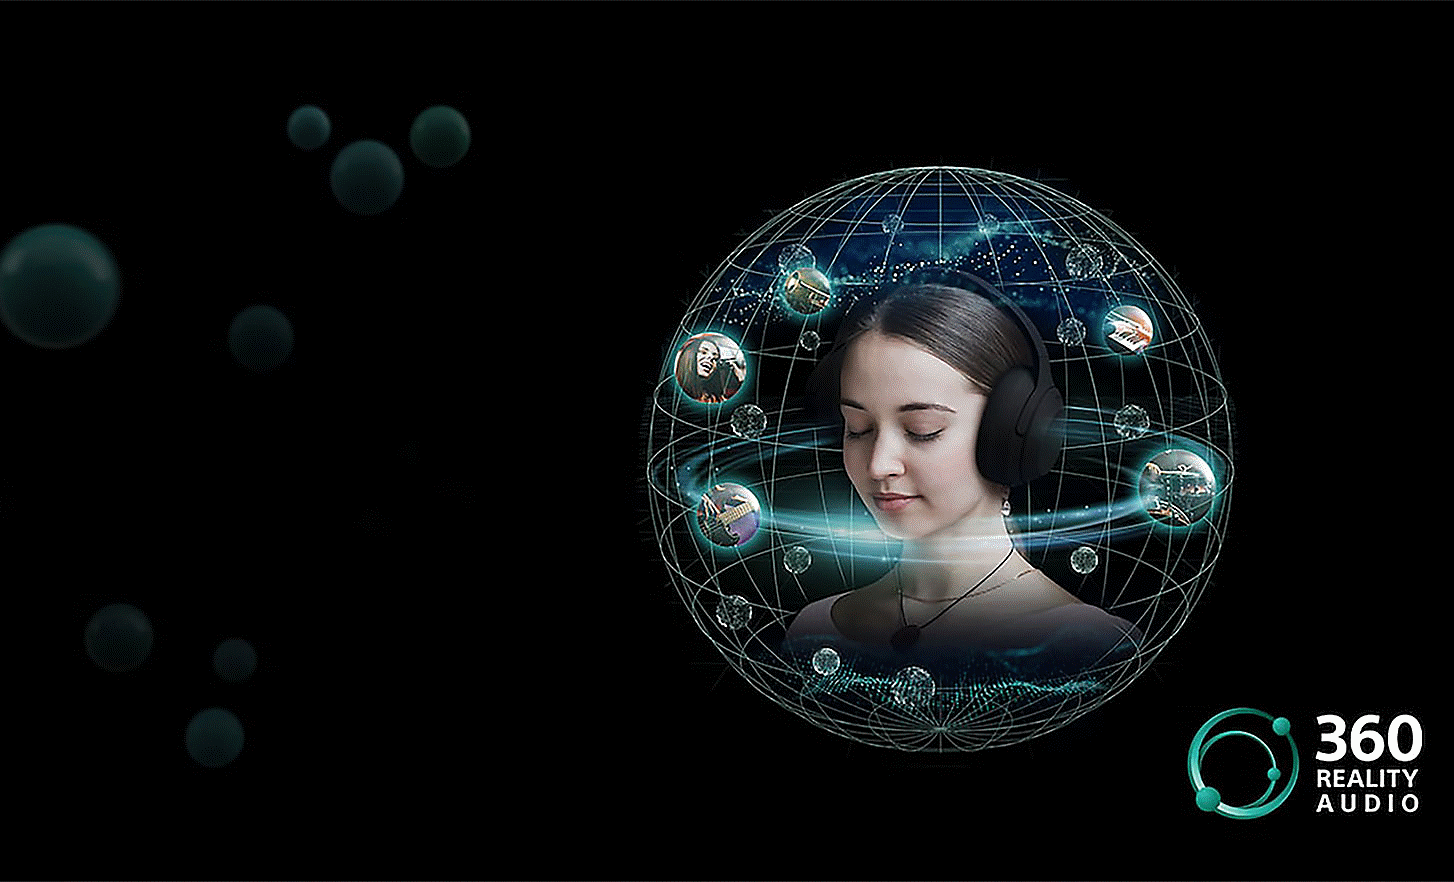 Bild einer Person, die Kopfhörer trägt, umgeben von Klangblasen in einem kreisförmigen Netz und dem 360 Reality Audio Logo auf der rechten Seite